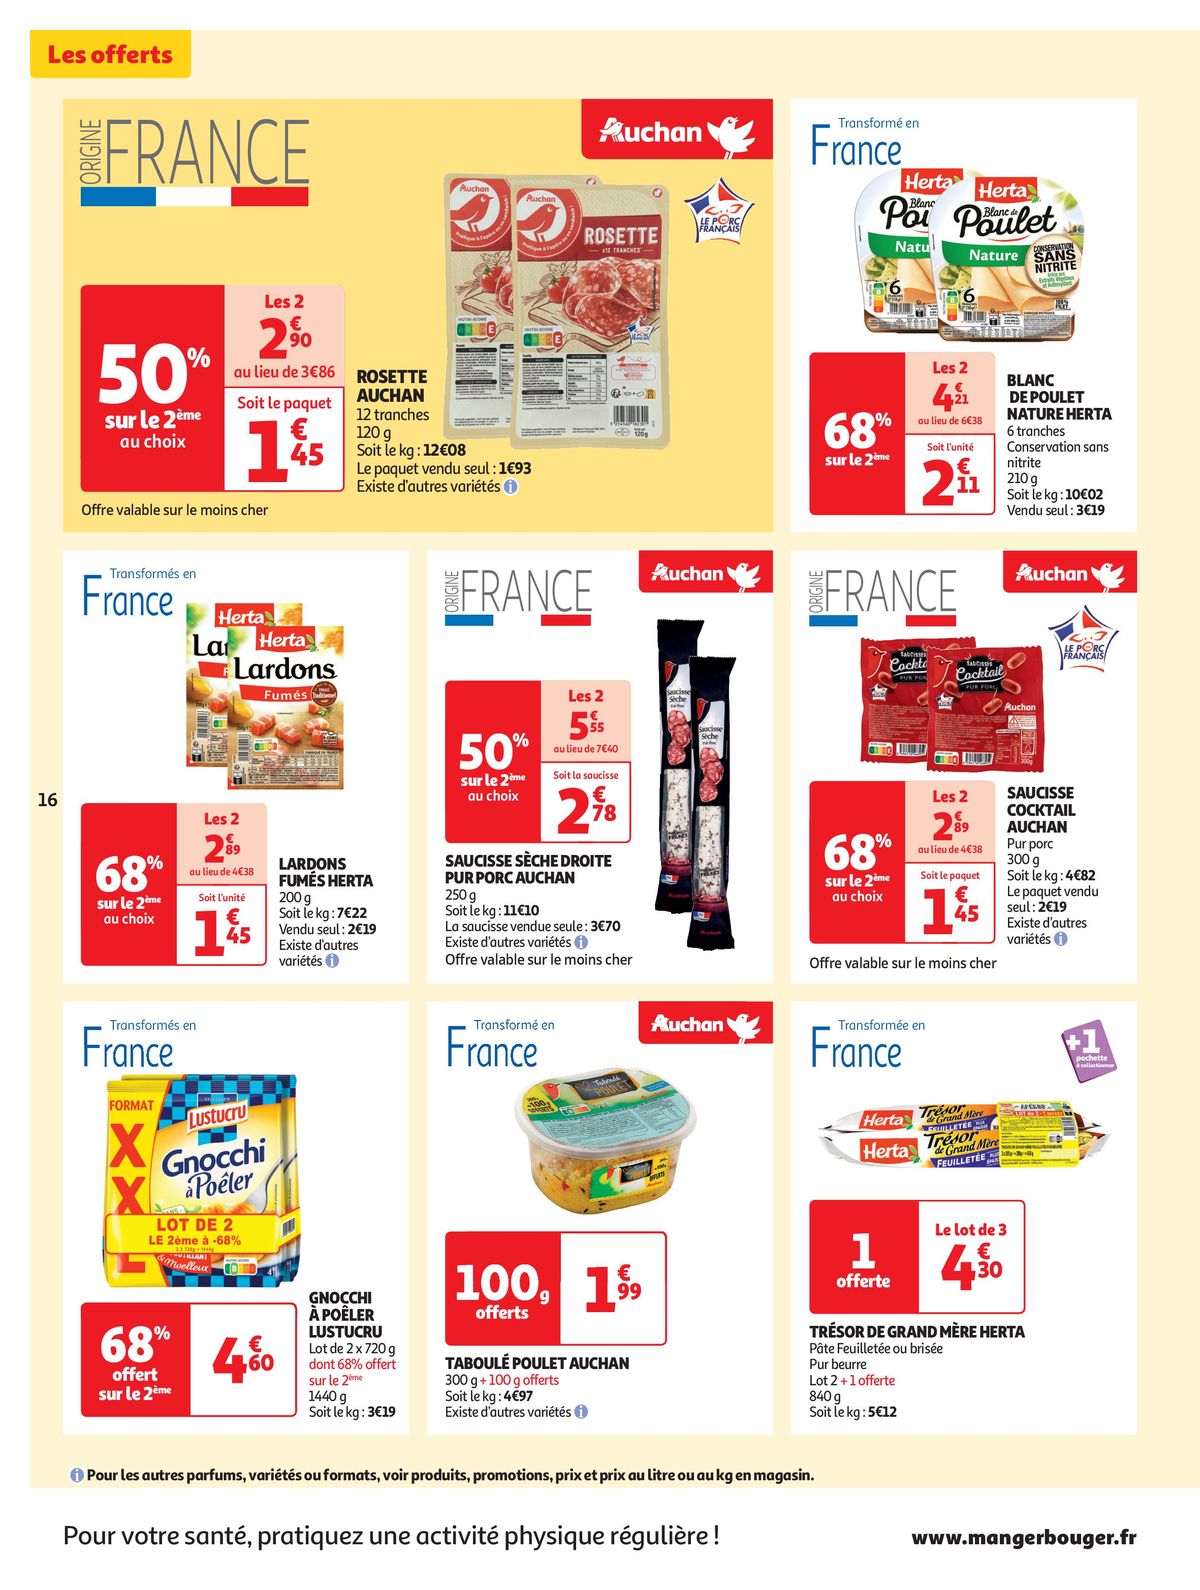 Catalogue Spécial Cuisine Gourmane dans votre supermarché, page 00016